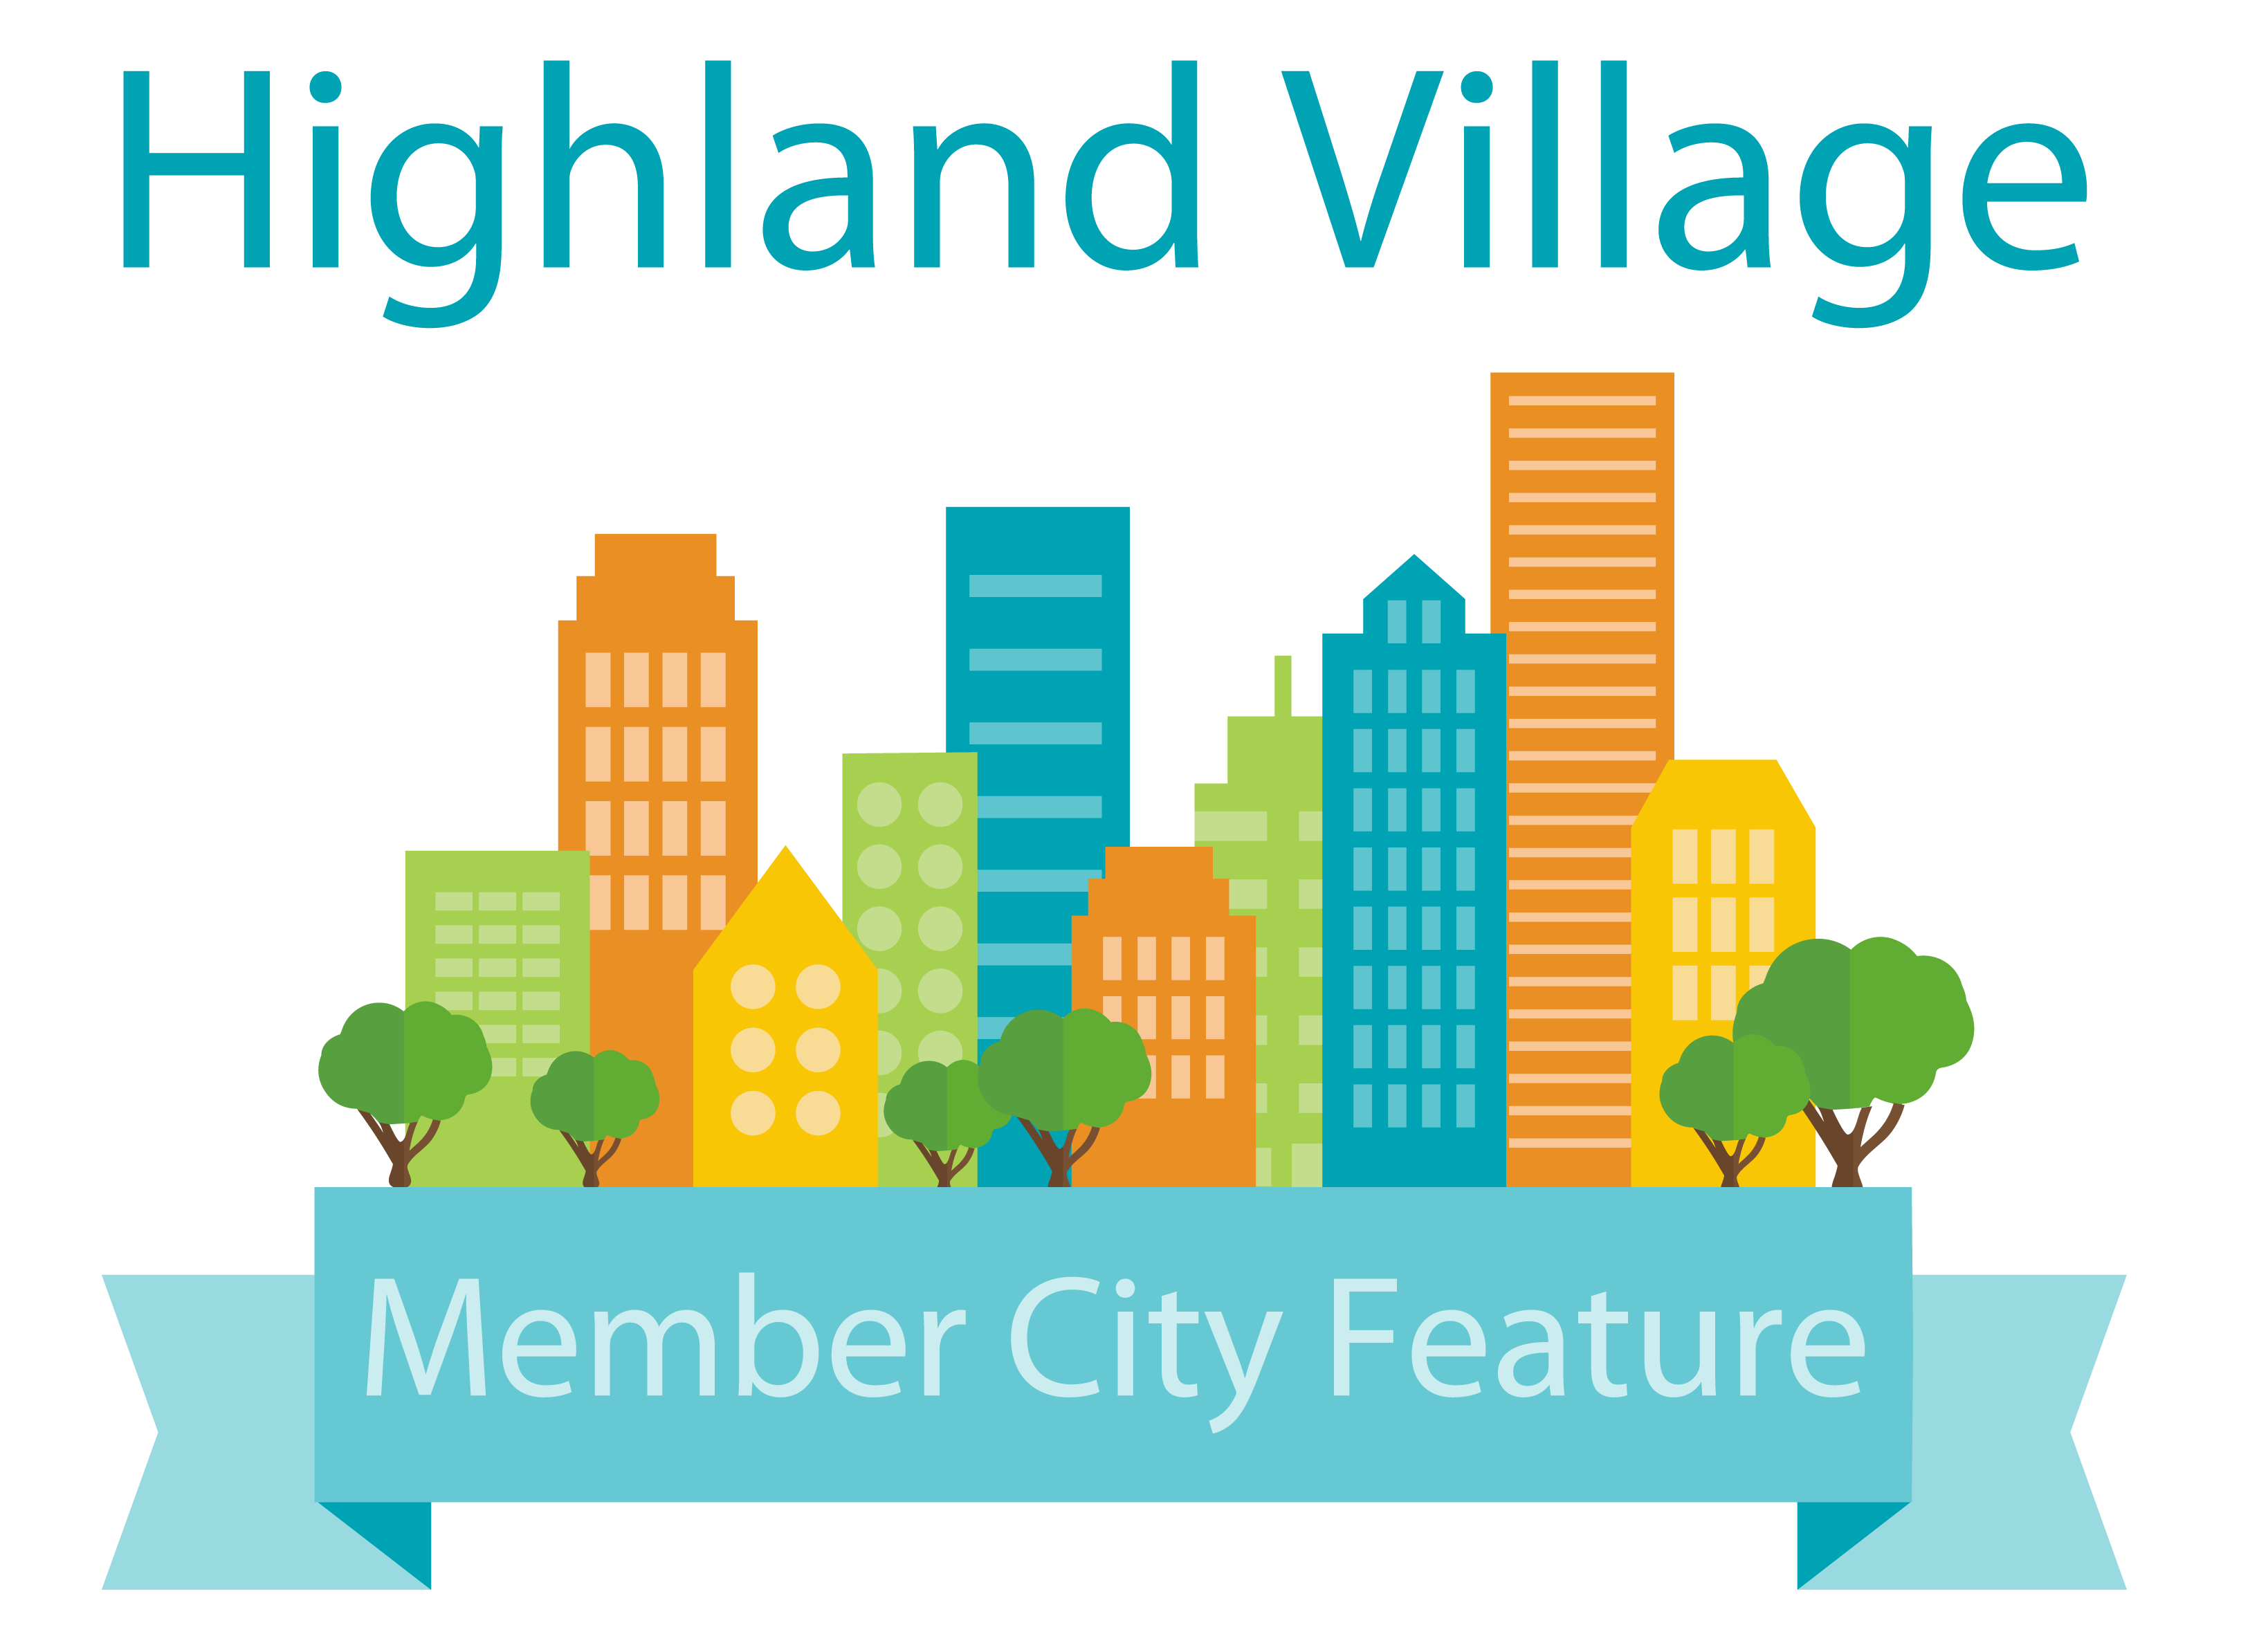 Highland Village – Member City Highlight